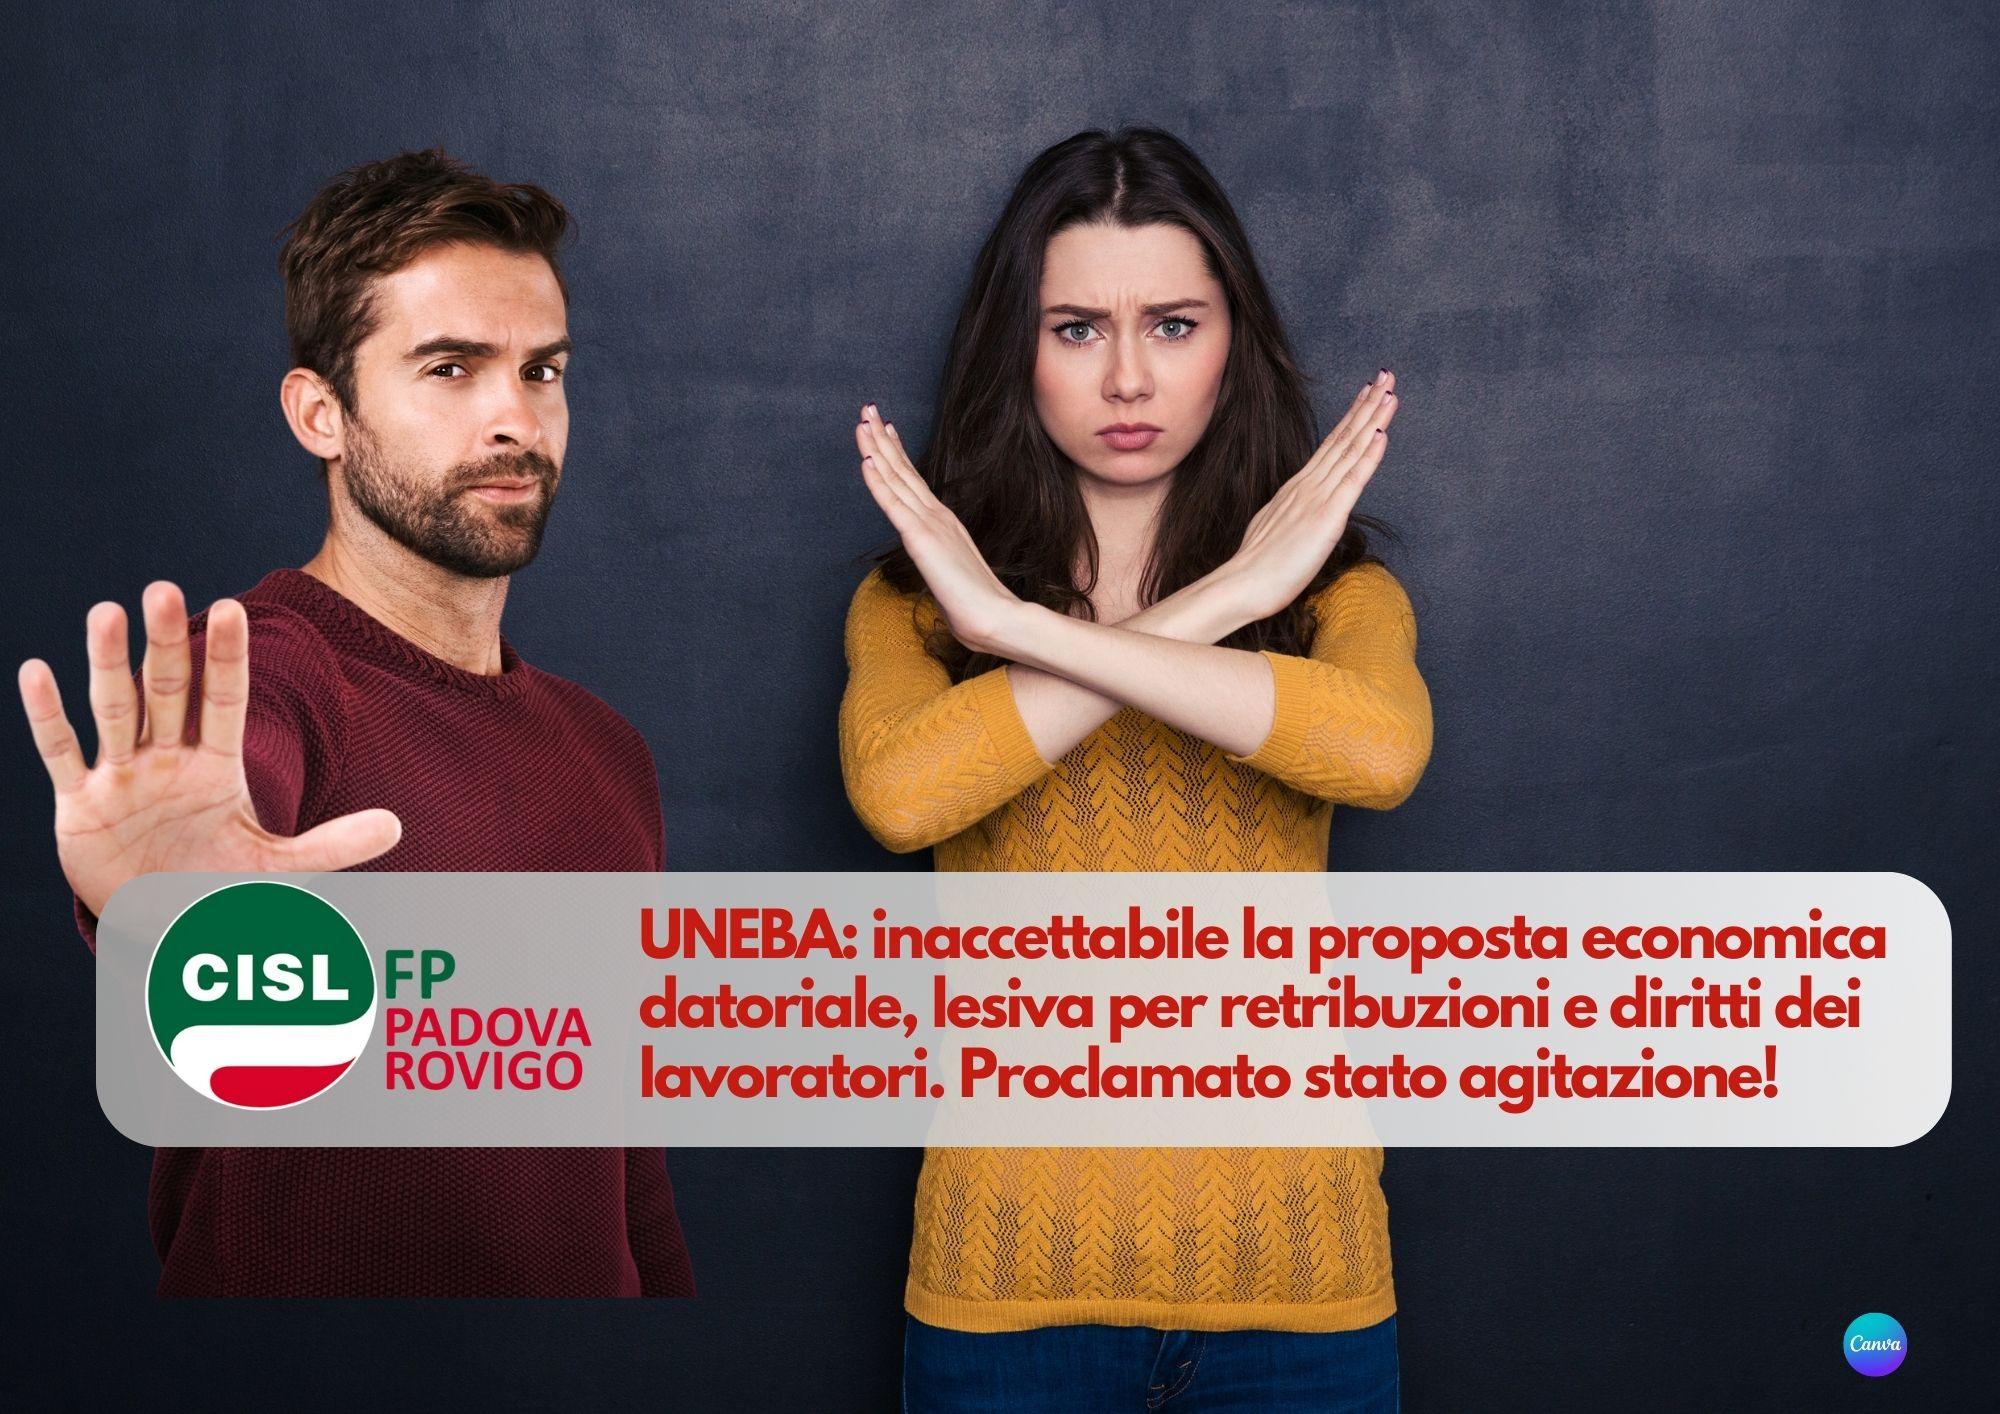 CISL FP Padova Rovigo. UNEBA inaccettabile la proposta economica datoriale. Proclamato stato agitazione